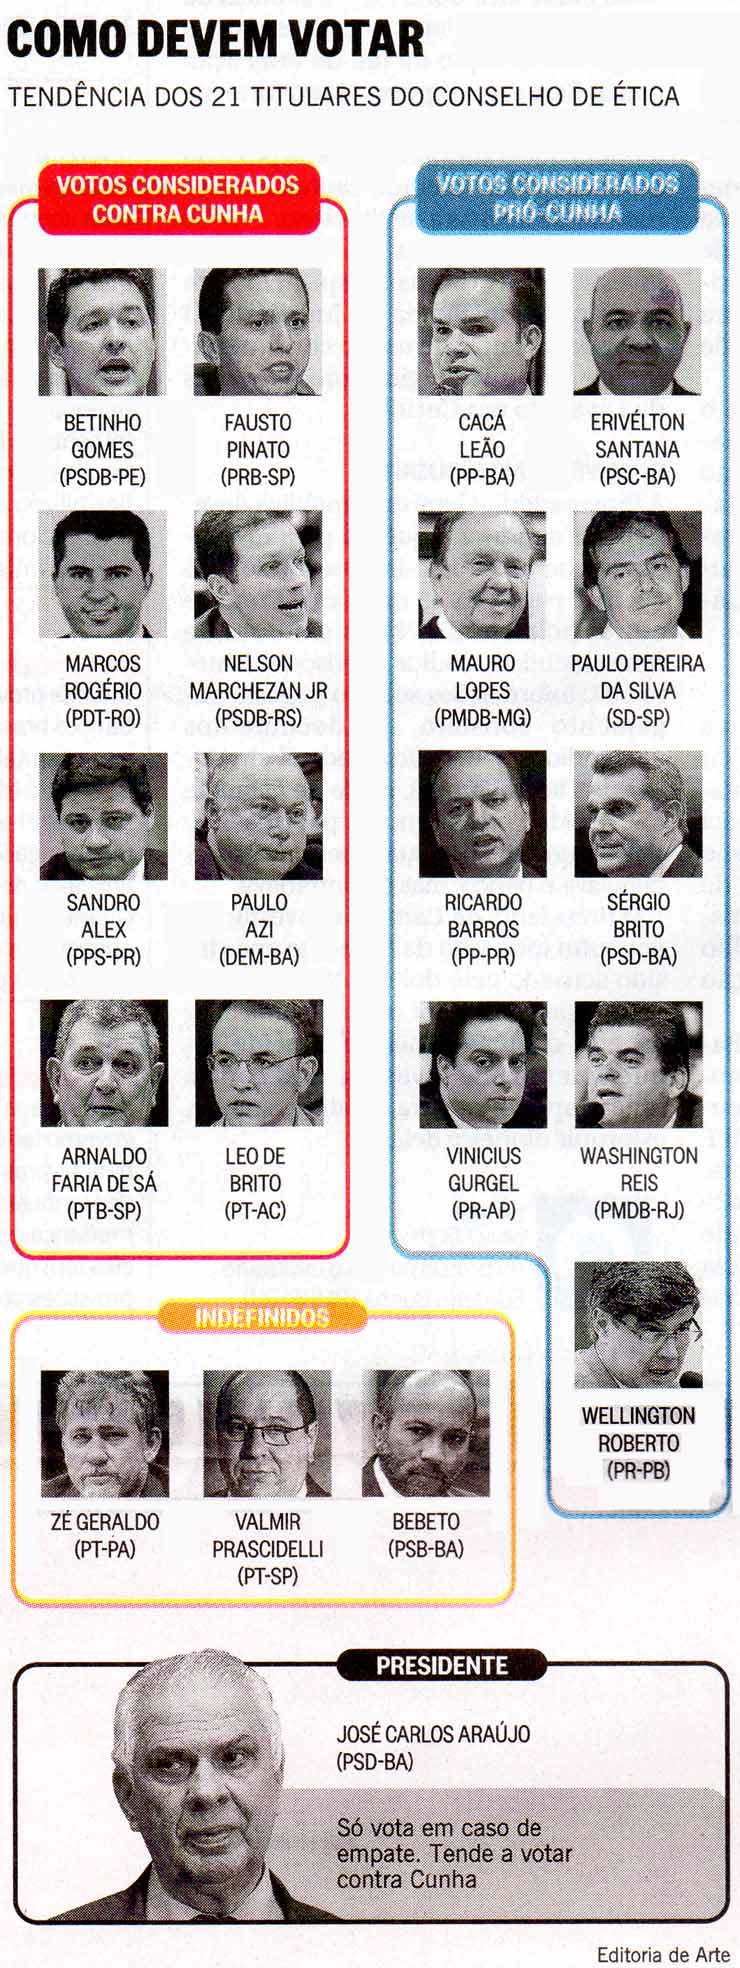 O Globo - Impresso - 01/11/2015 - Impeachment de Cunha: Como devem votar os deputados